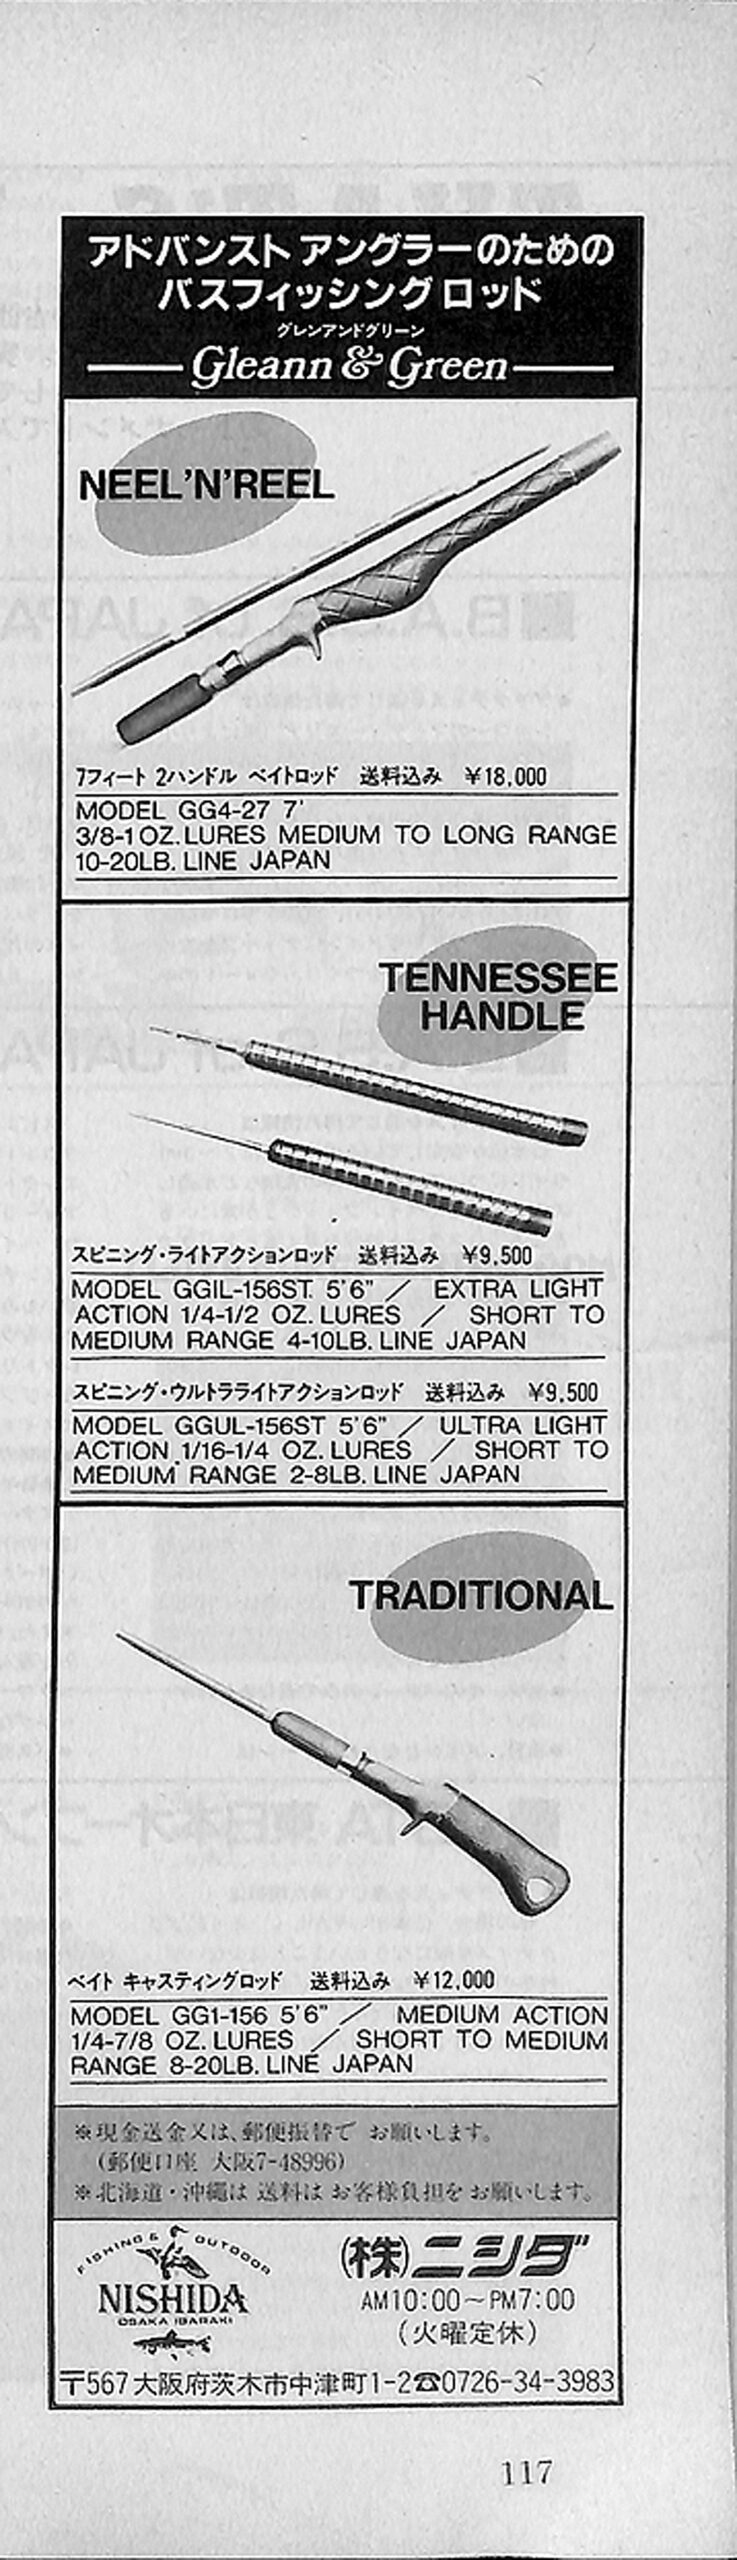 バスフィッシング広告ヒストリー：1986年のバス雑誌の広告 vol.02